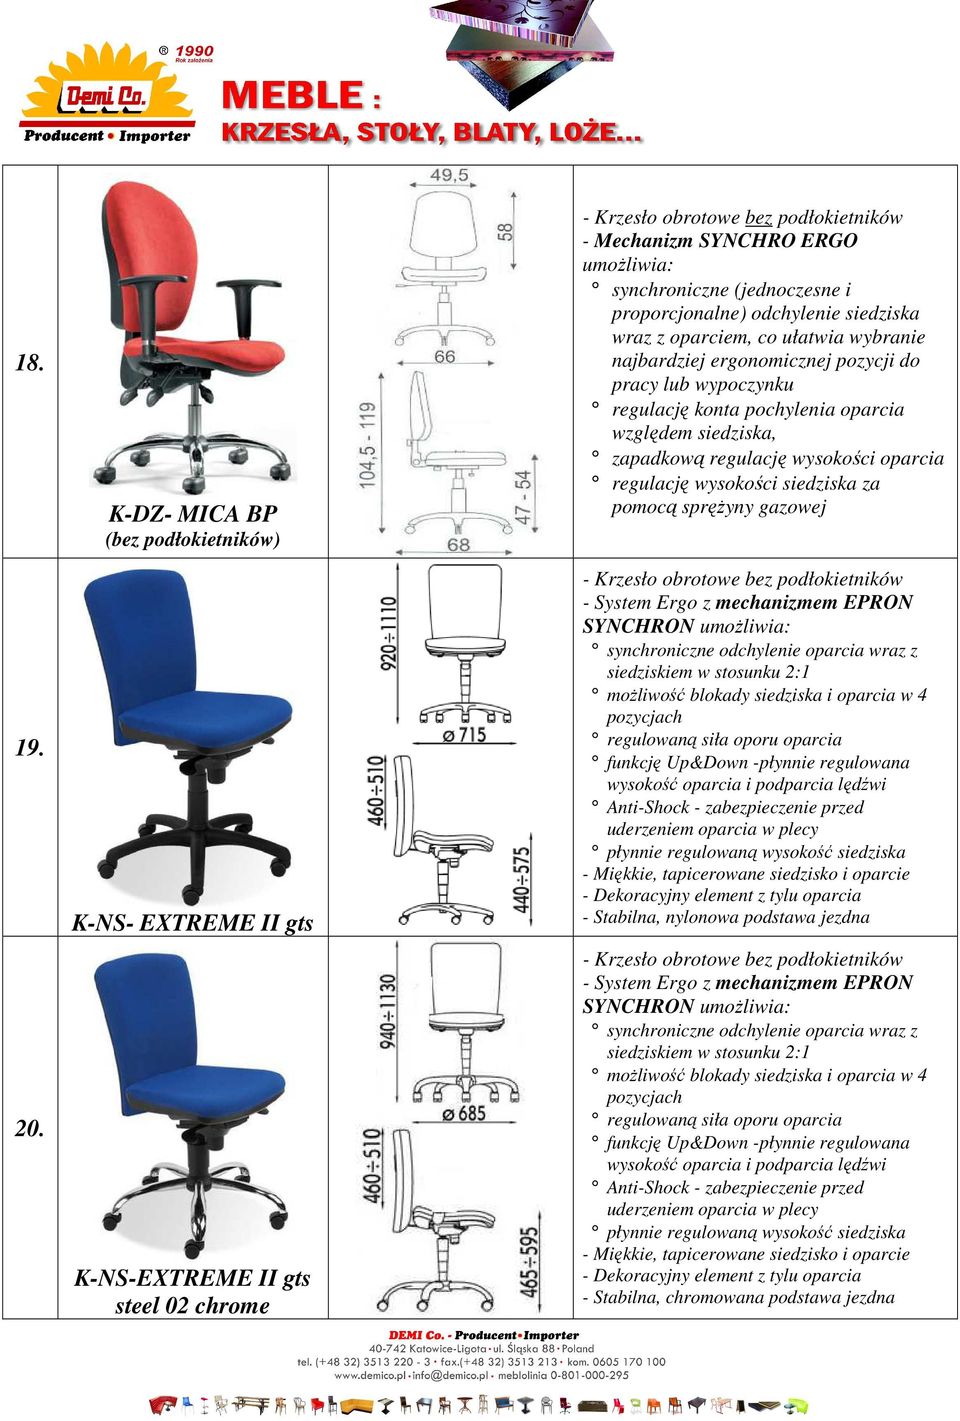 najbardziej ergonomicznej pozycji do pracy lub wypoczynku regulację konta pochylenia oparcia względem siedziska, zapadkową regulację wysokości oparcia regulację wysokości siedziska za pomocą sprężyny